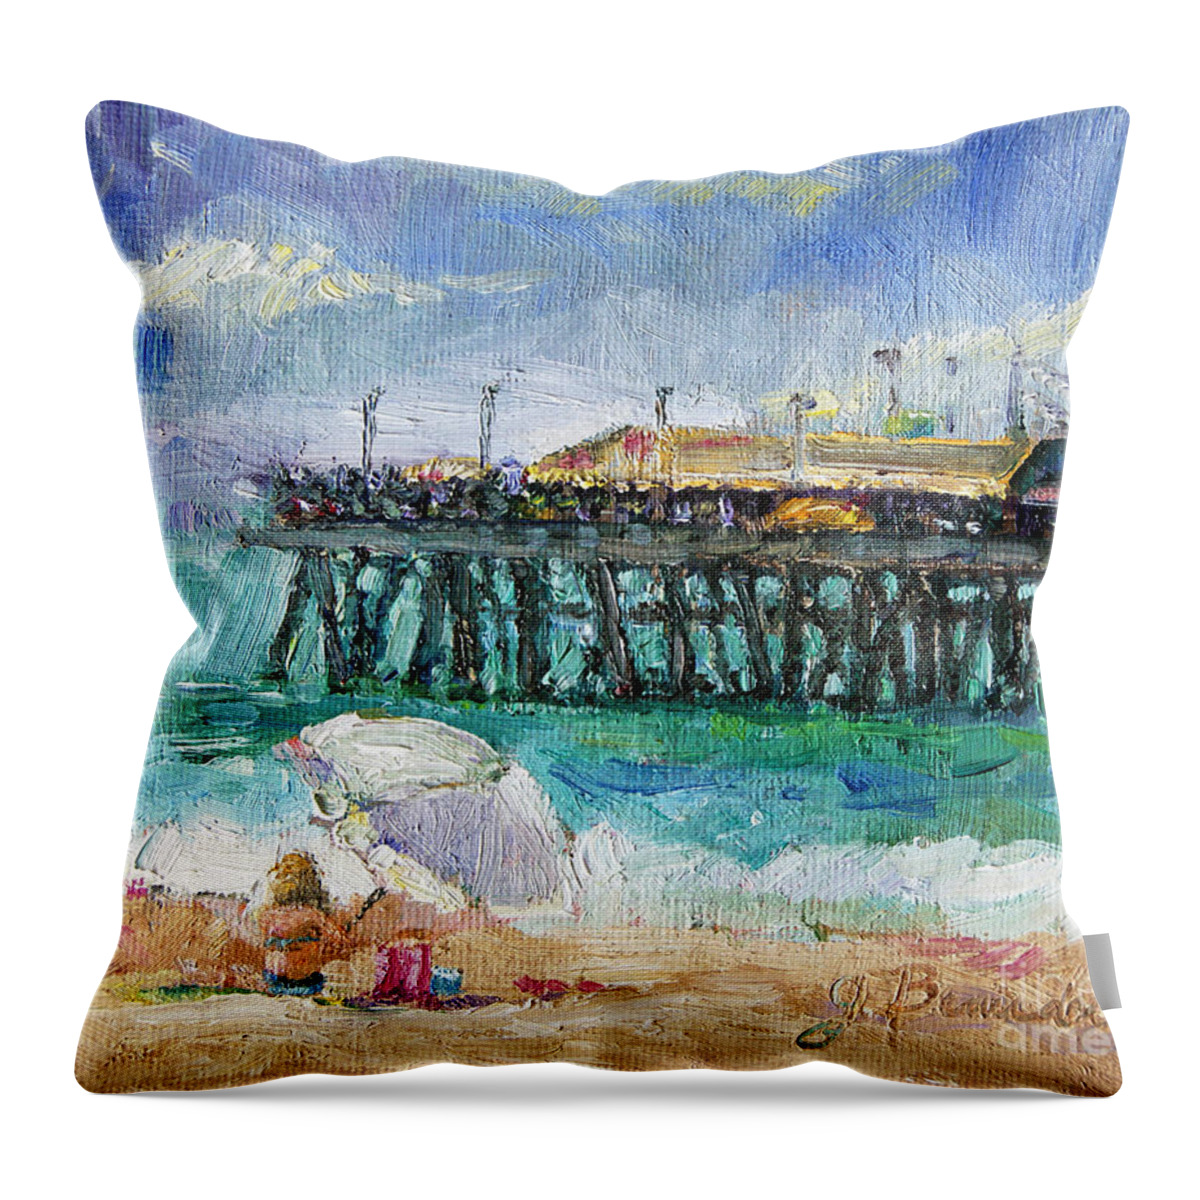  Throw Pillow featuring the painting Summer Sun #1 by Jennifer Beaudet